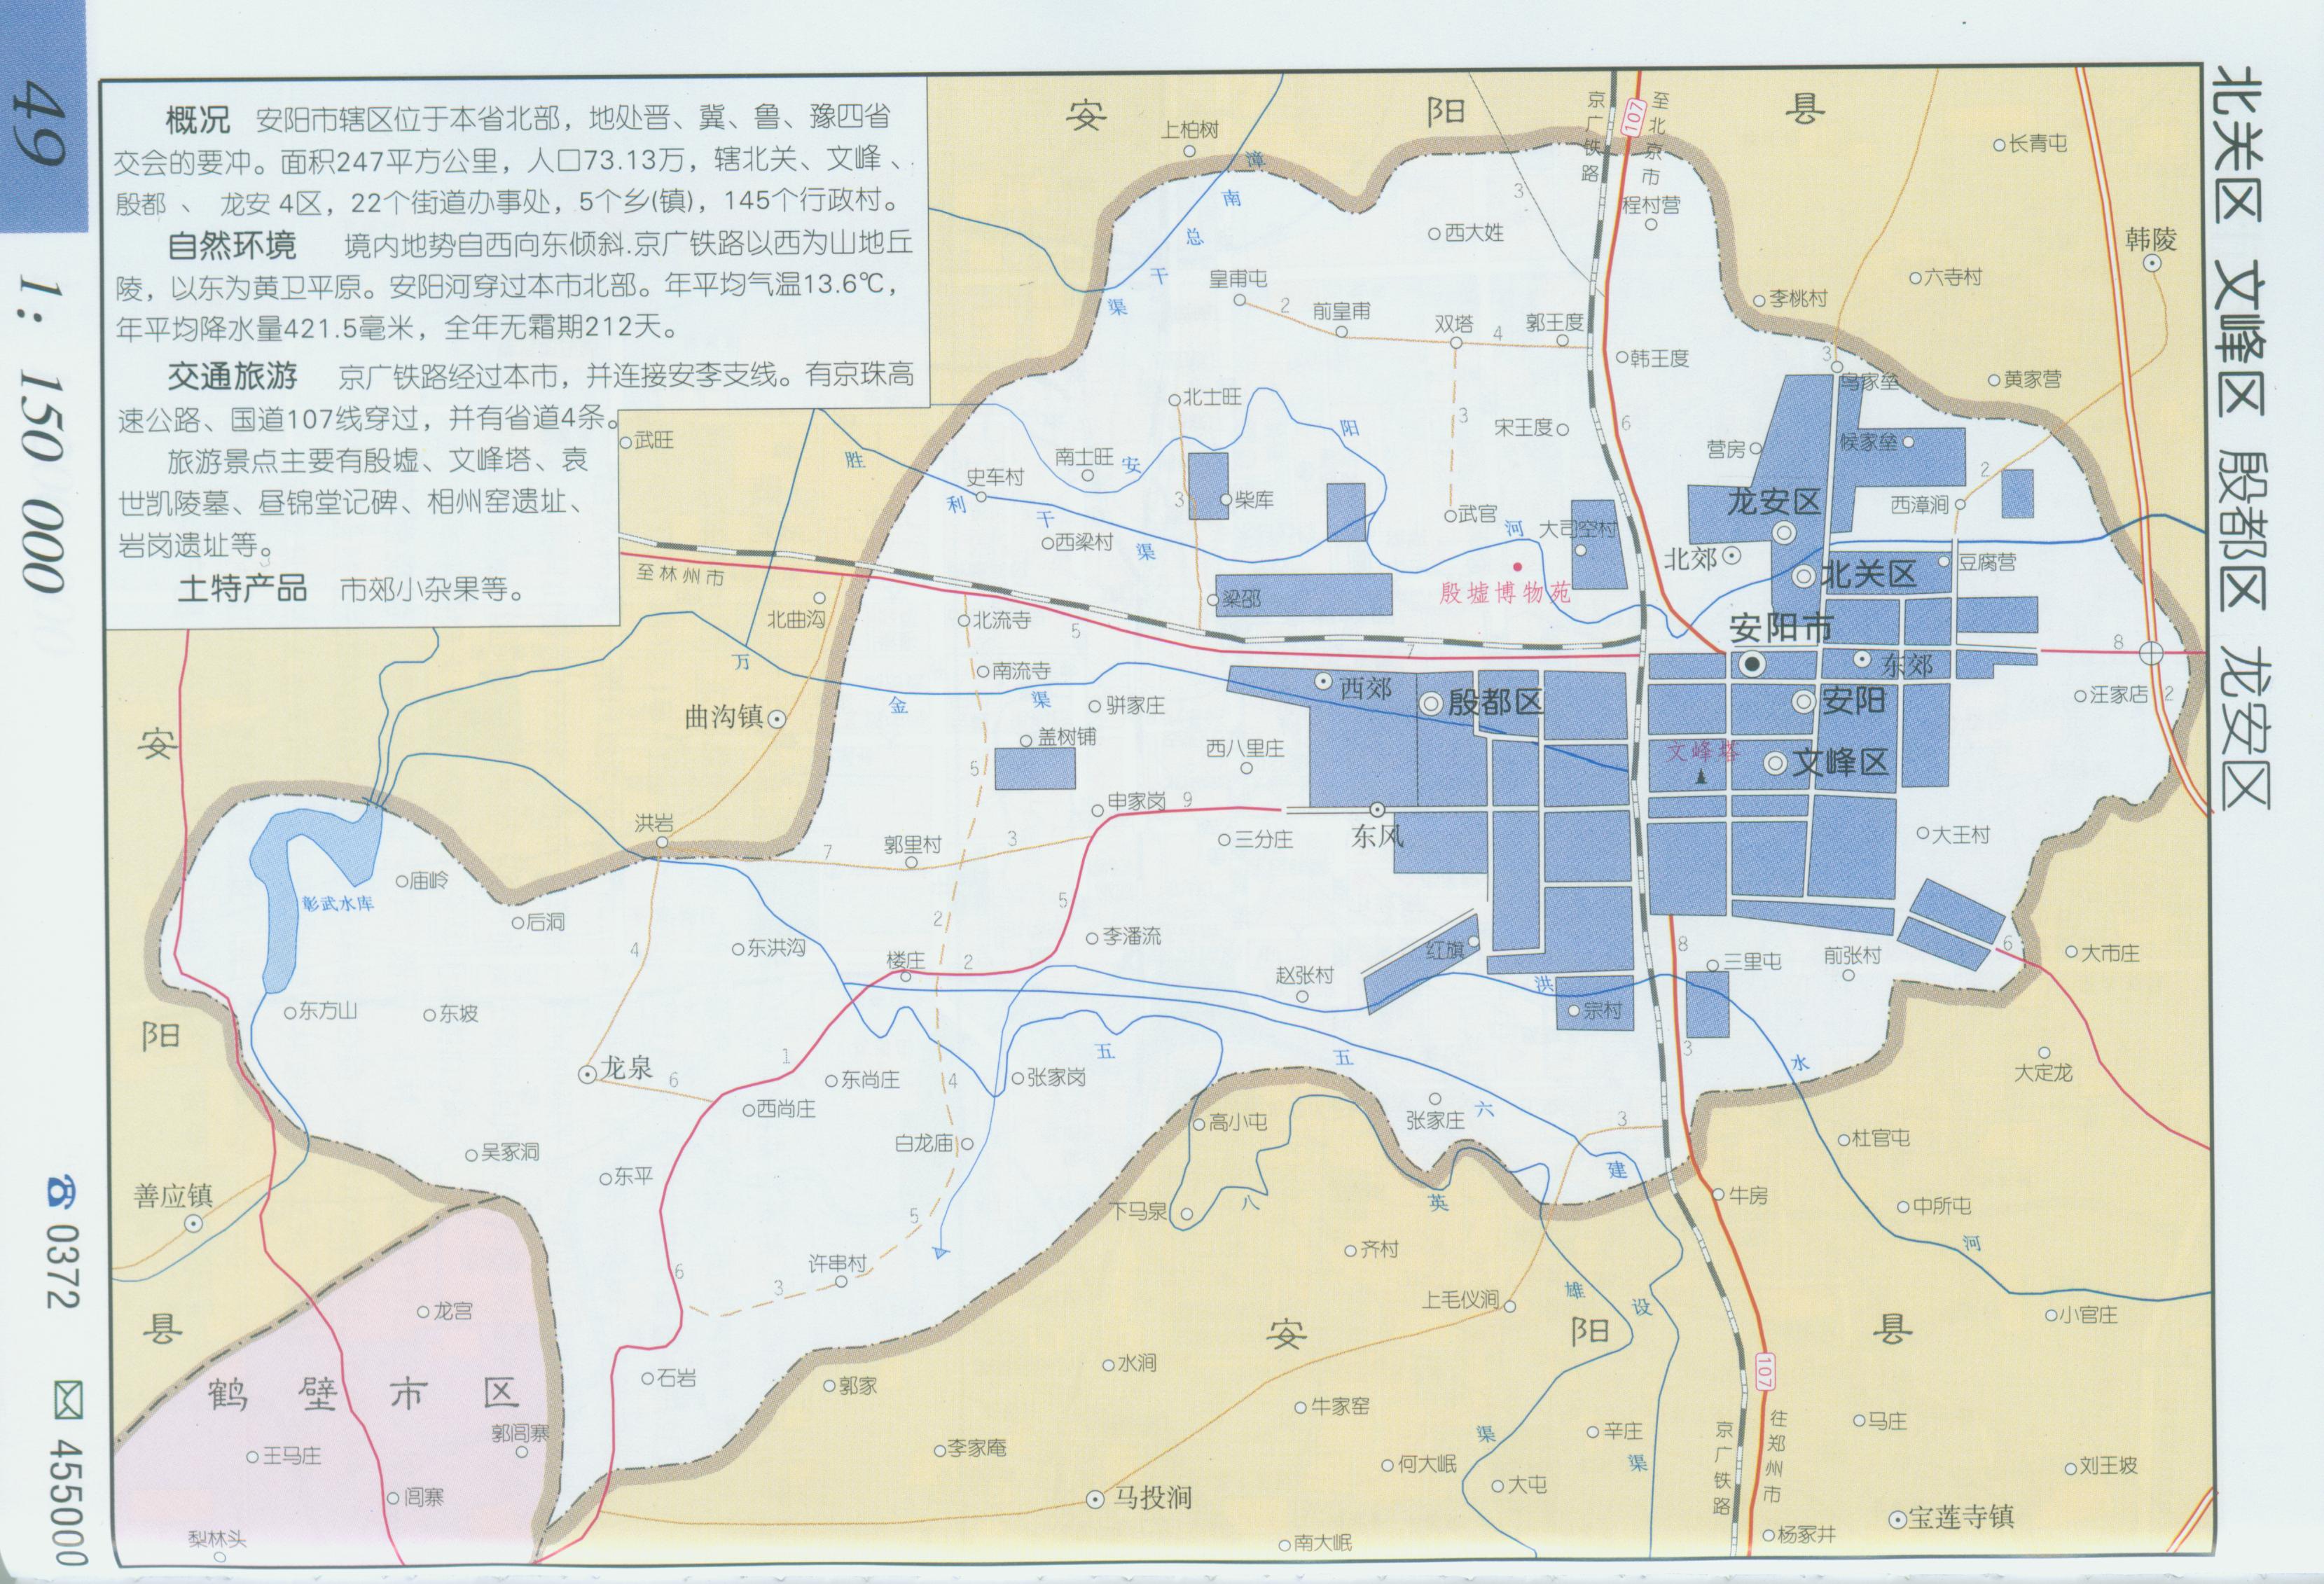 地图窝 中国 河南 安阳  (长按地图可以放大,保存,分享)图片